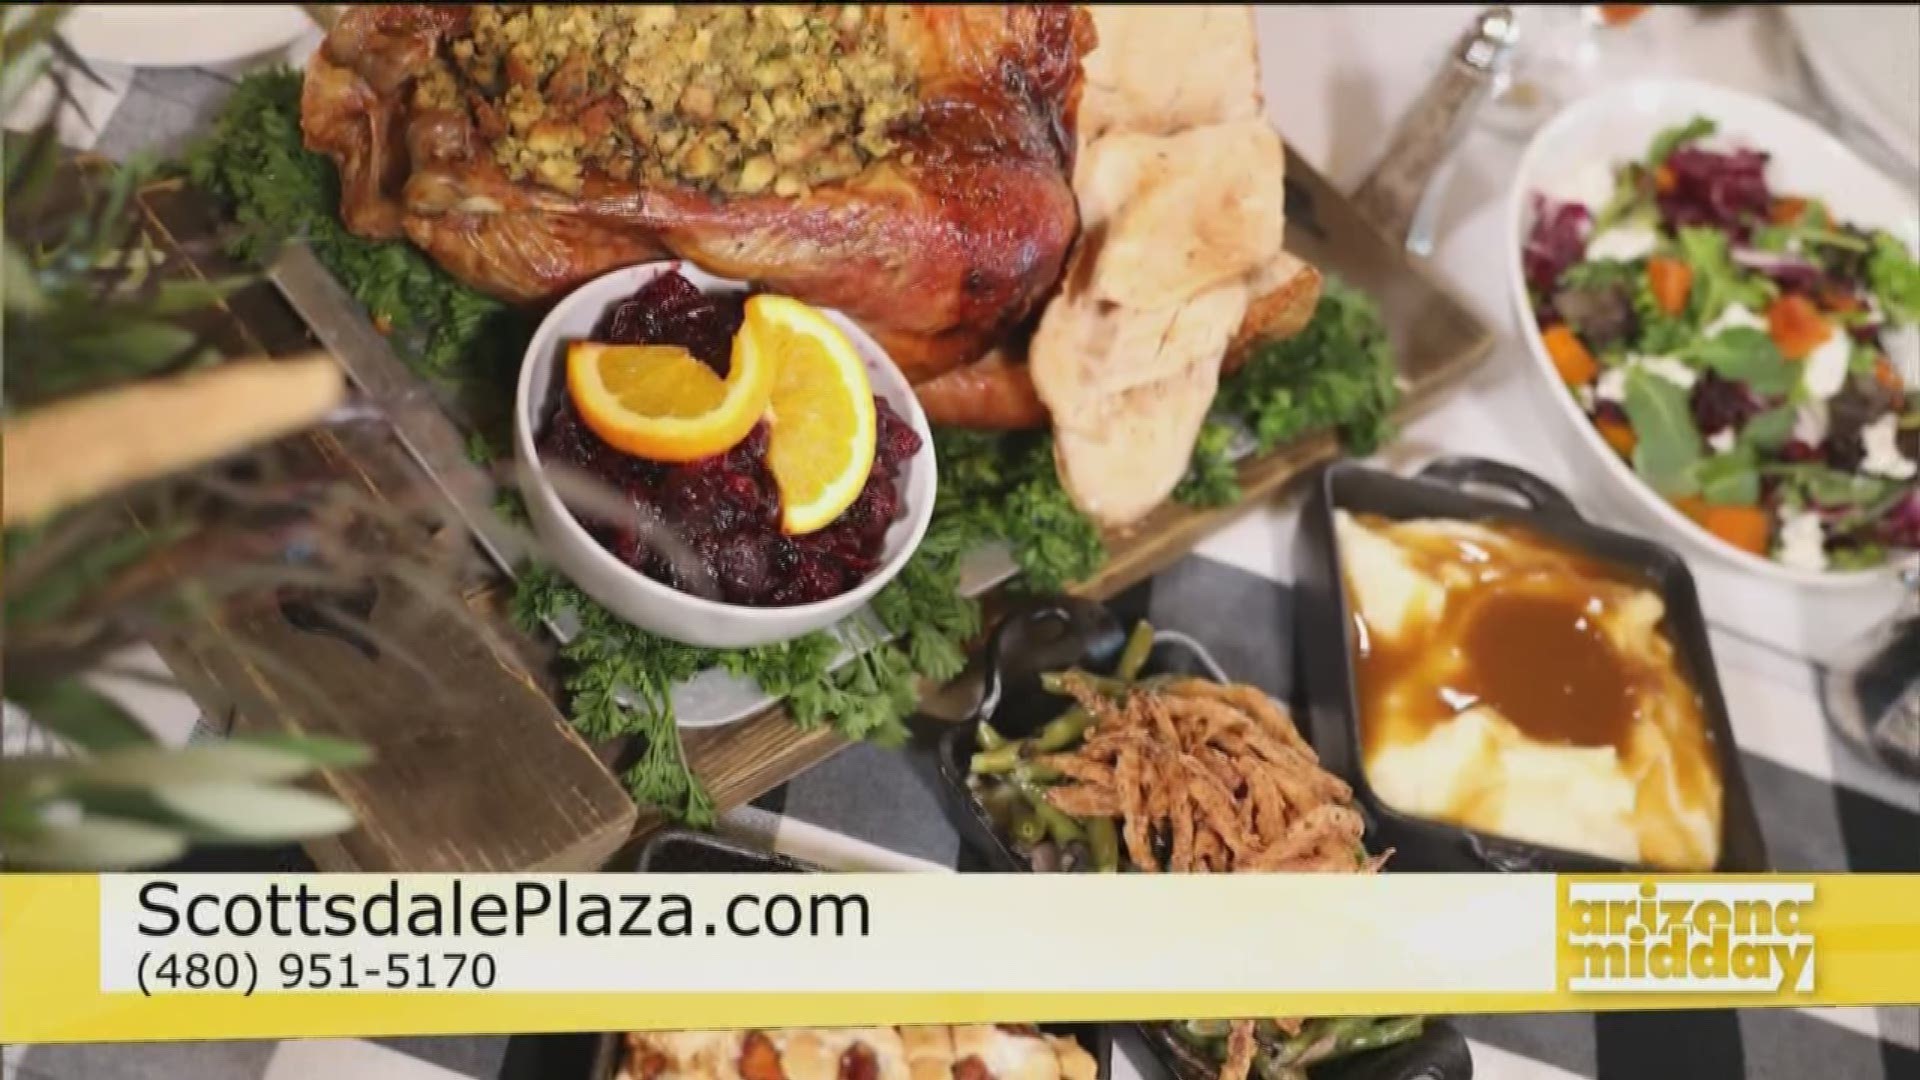 The Scottsdale Plaza Resort is Making Thanksgiving Dinner Easy